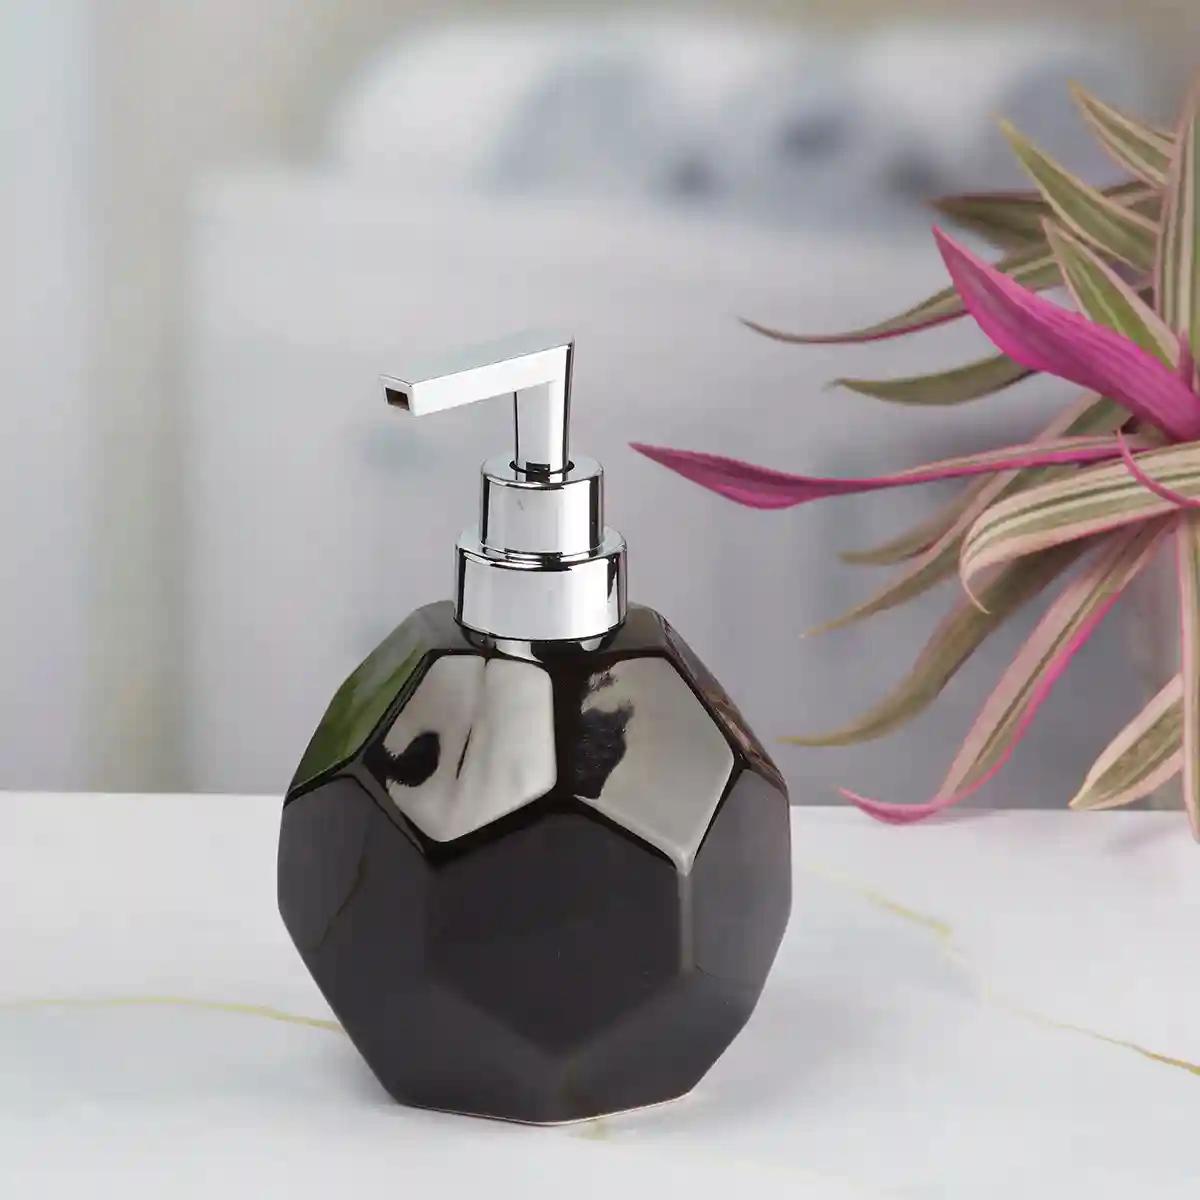 Kookee Ceramic Soap Dispenser for Bathroom handwash, refillable pump bottle for Kitchen hand wash basin, Set of 2 - Black (8024)